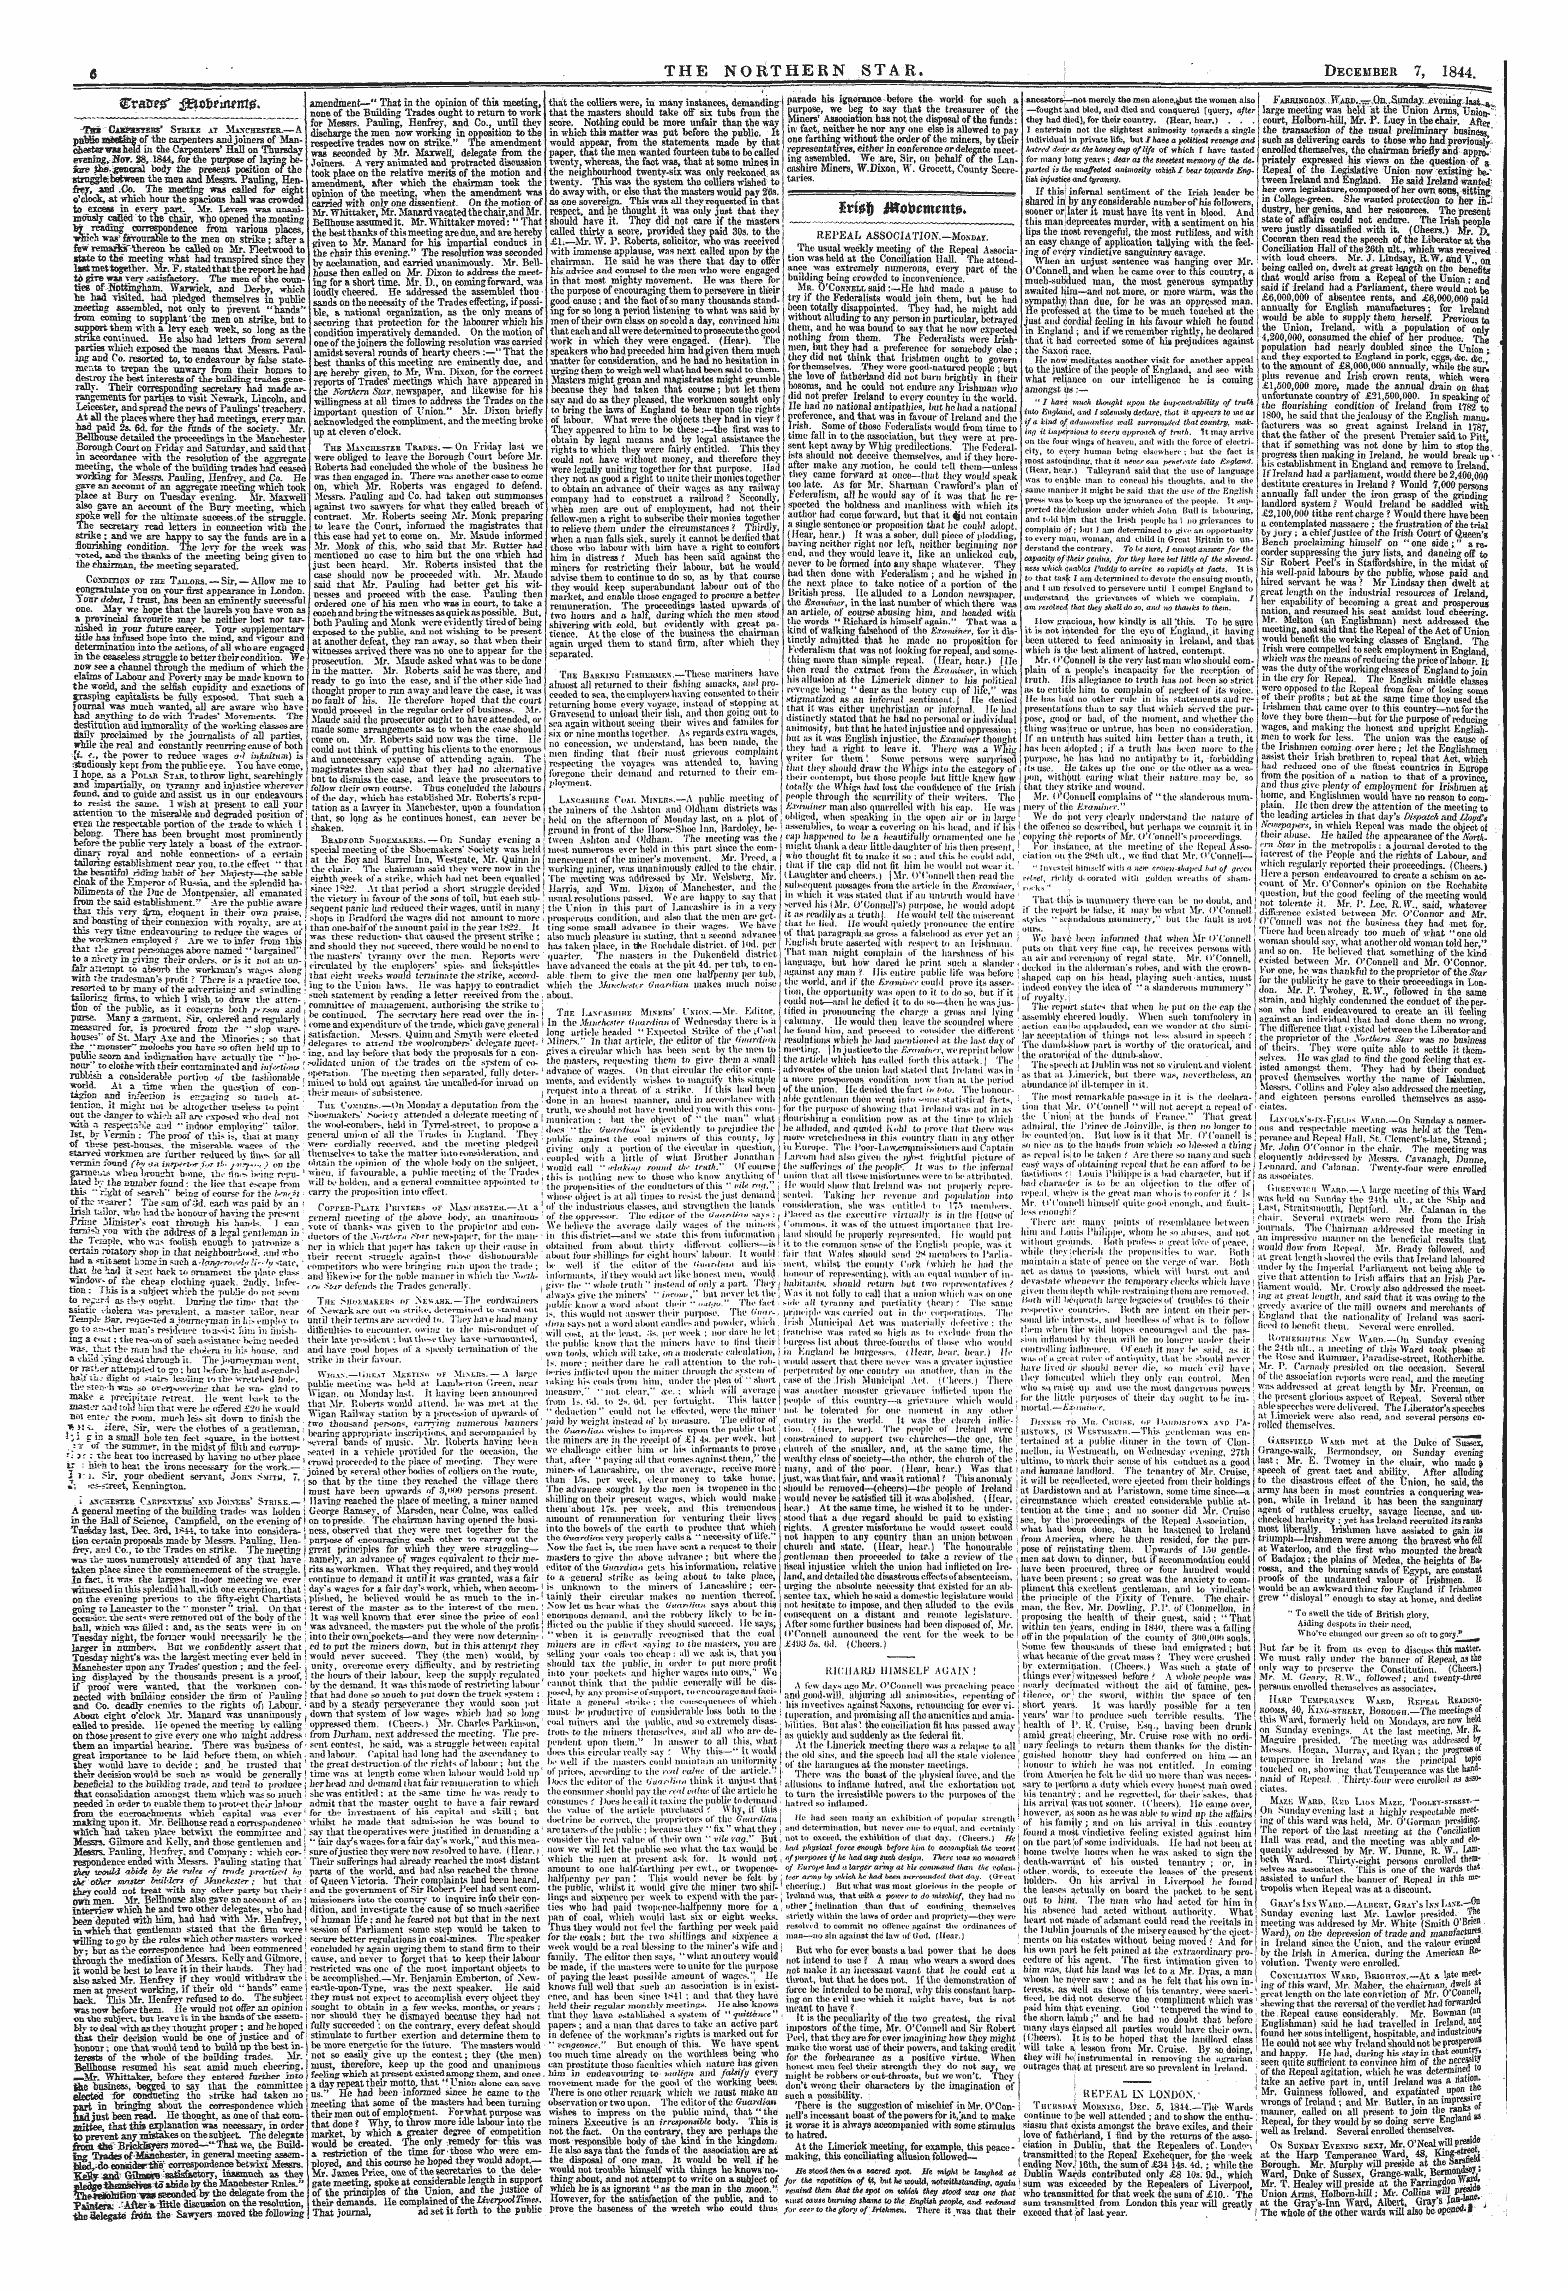 Northern Star (1837-1852): jS F Y, 1st edition - $Ri0$ Jftotoim*Nt0*